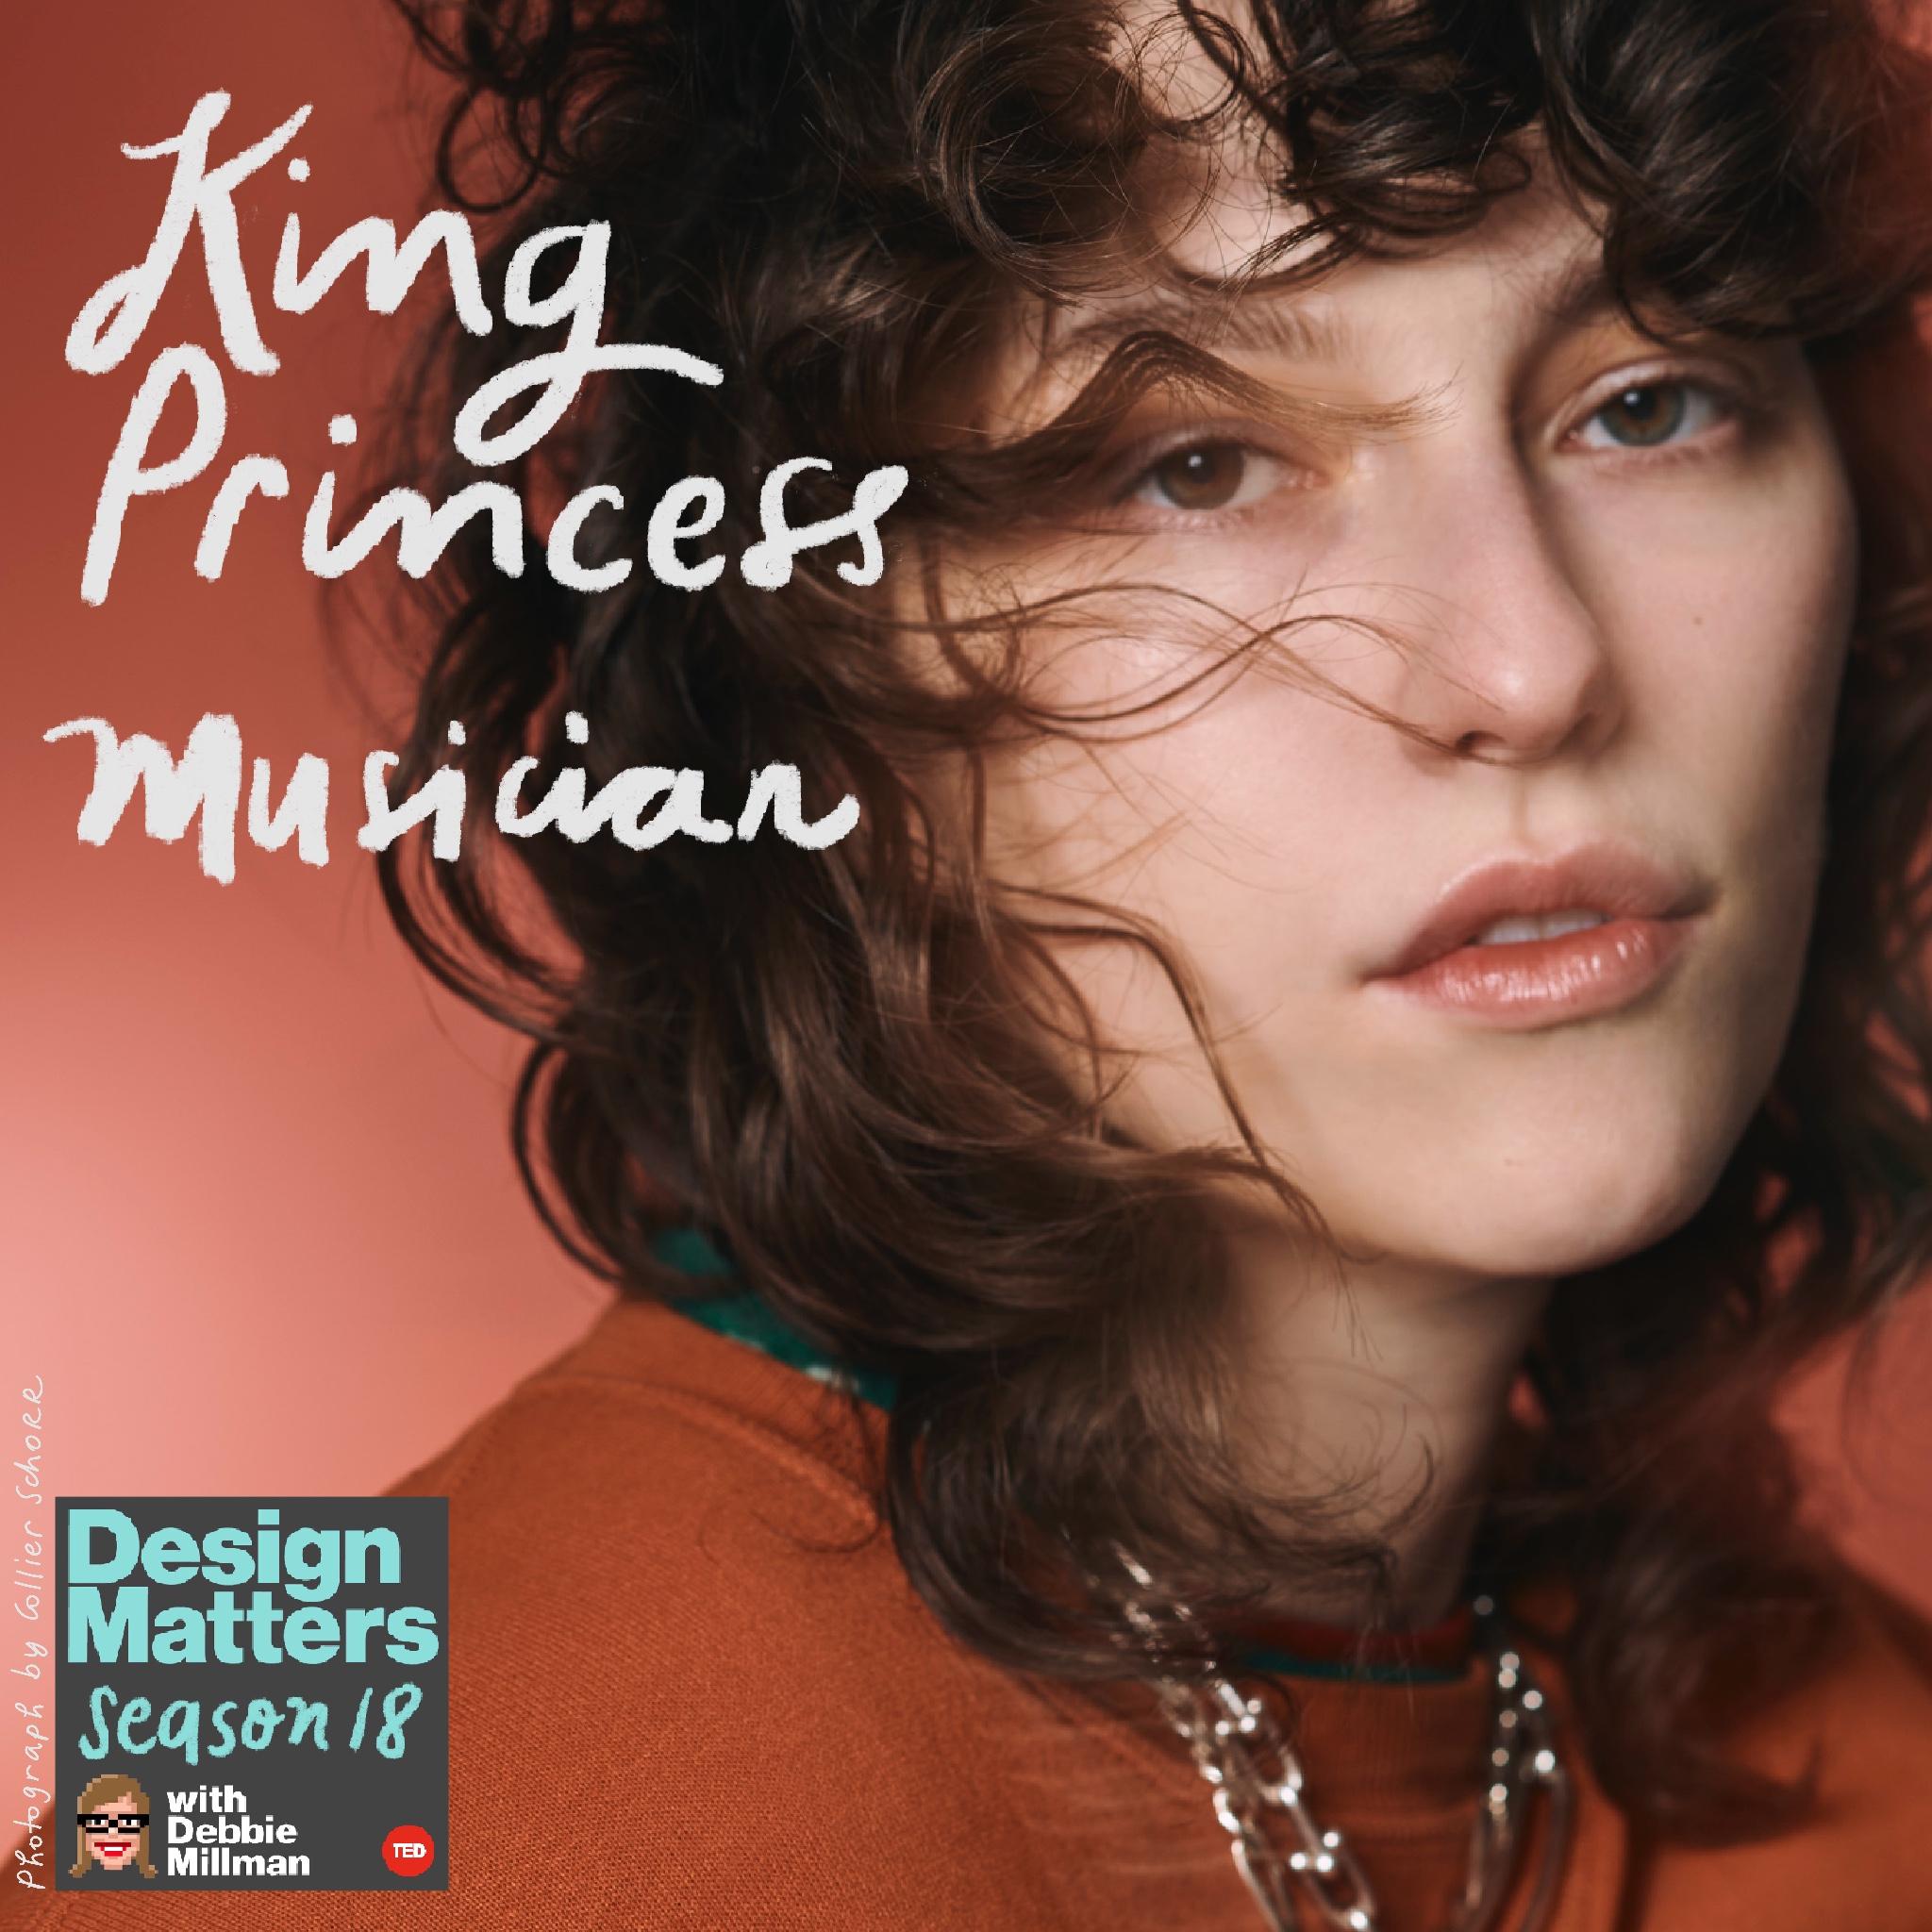 Thumbnail for "King Princess".